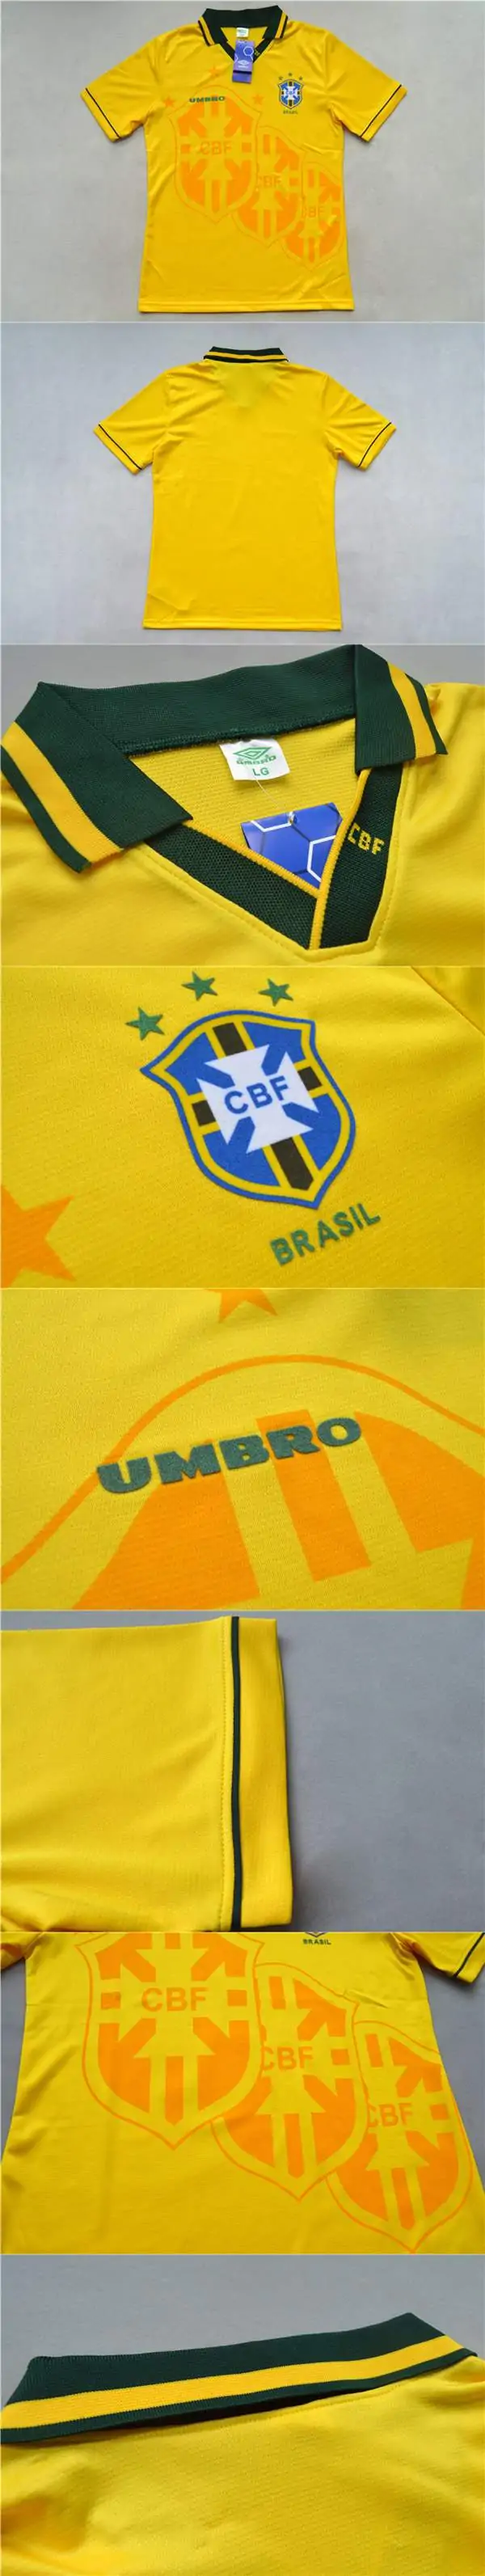 Men's Retro 1993/94 Brazil Home Soccer Jersey Shirt - World Cup Champion - Best Soccer Jersey - 4